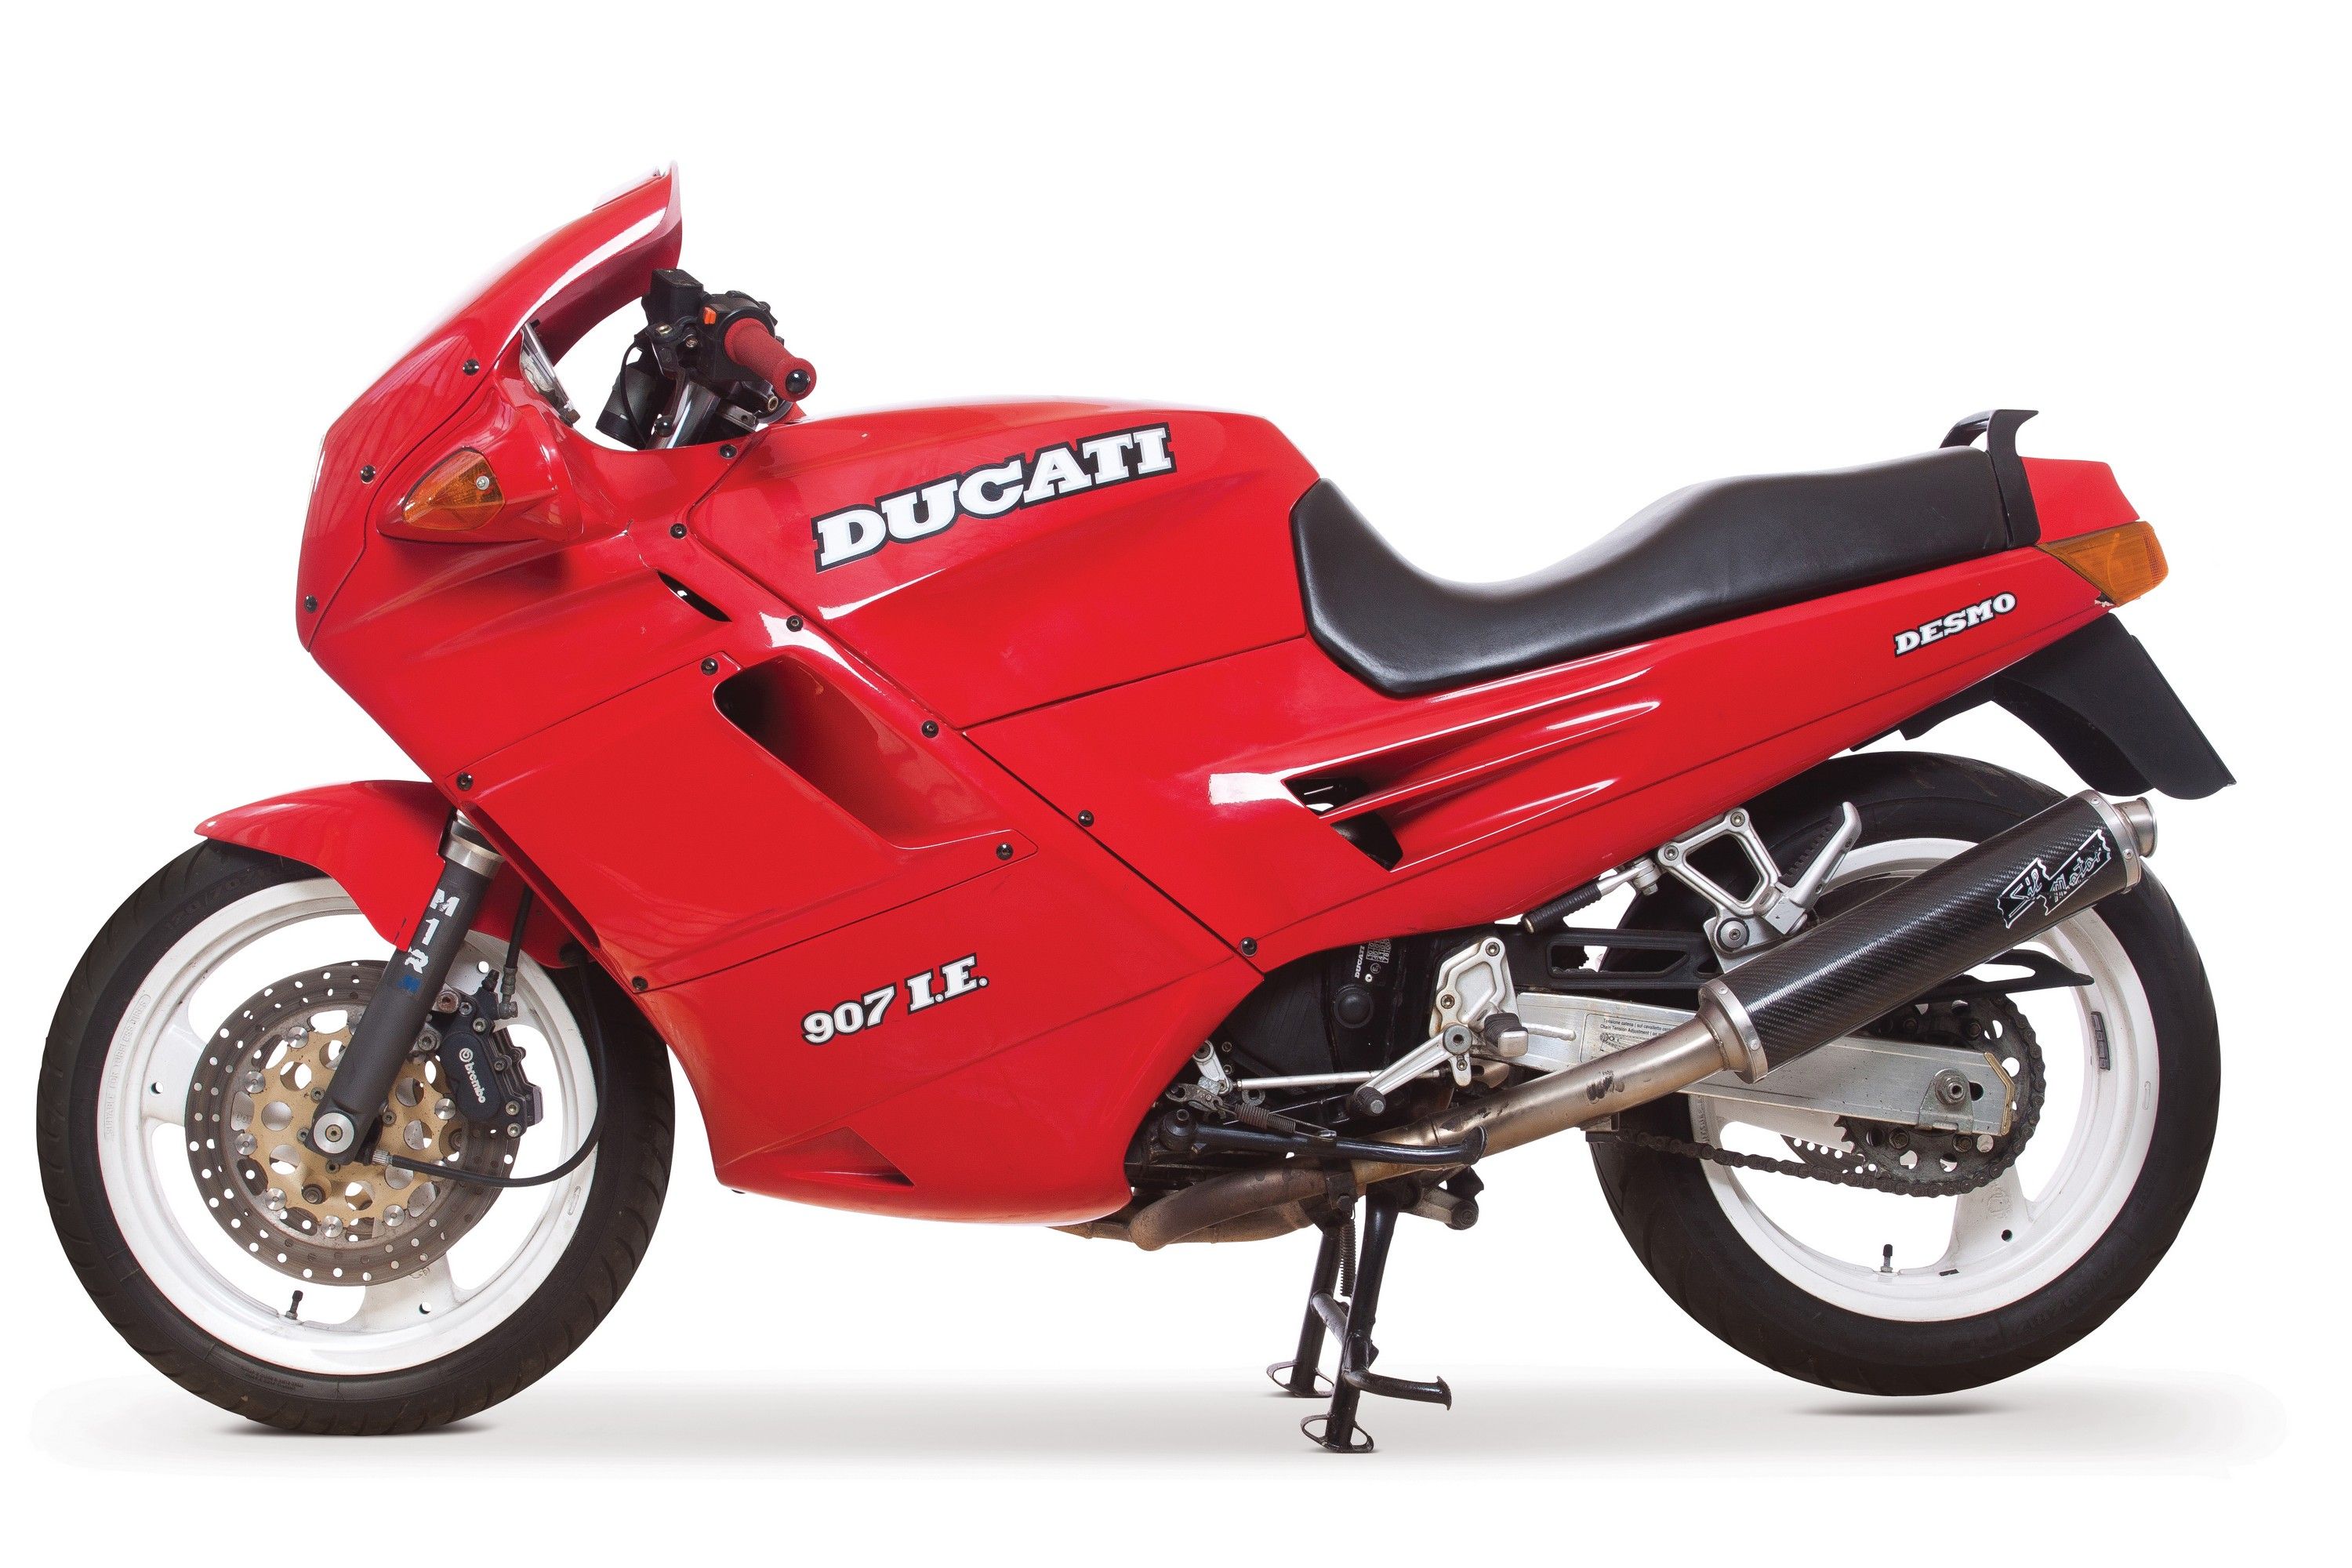 1991 Ducati 907 I.E. Desmo